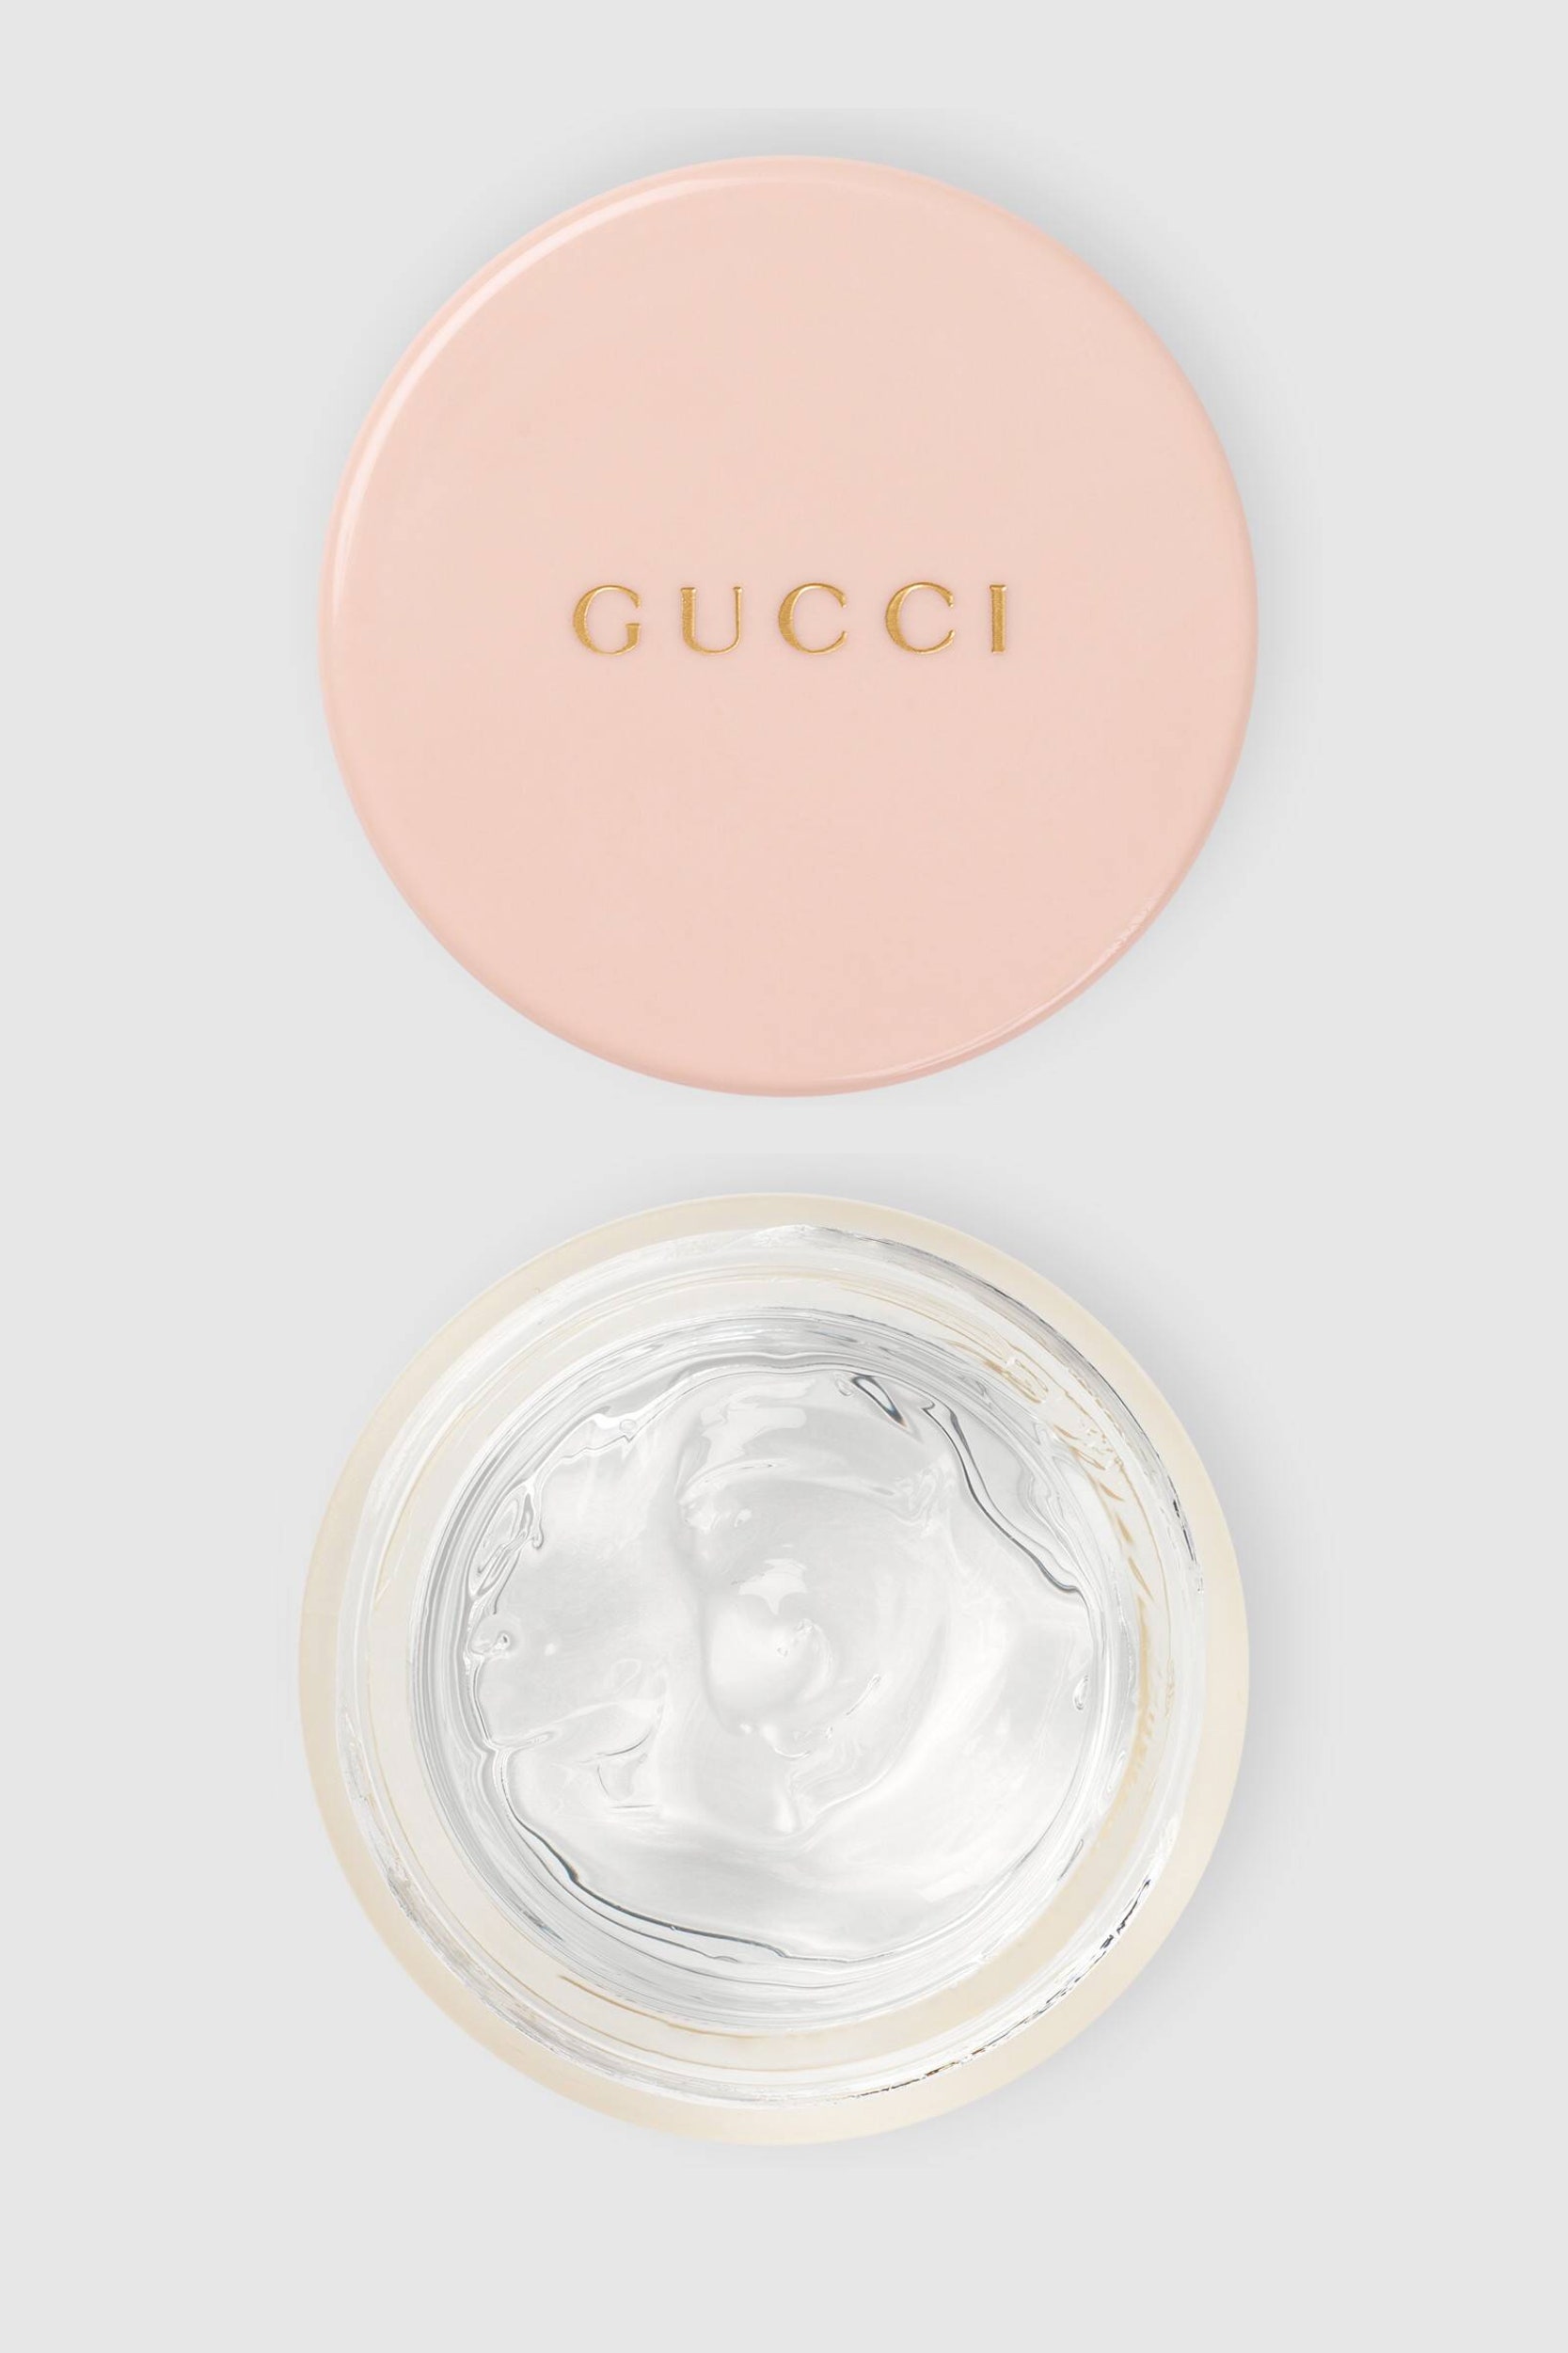 Gucci Beauty выпустили тушь и многофункциональный гель для макияжа